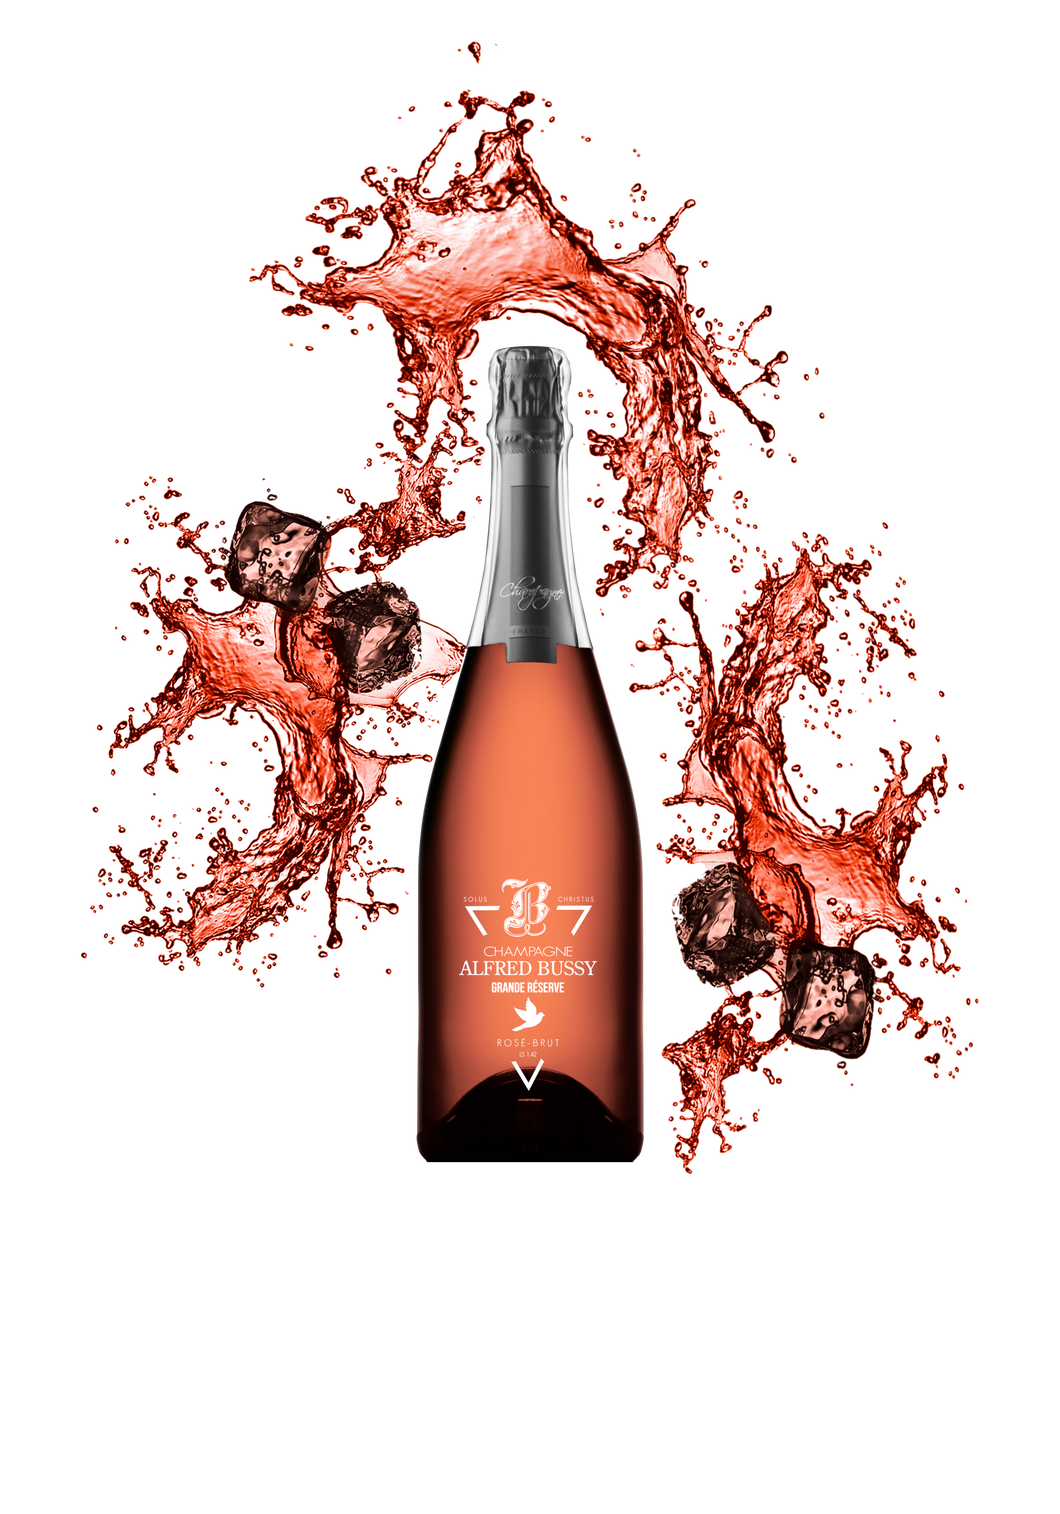 Champagne ROSÉ-BRUT Ce champagne rosé et brut est composé à 100% de chardonnay. Il a été produit par un vignoble possédant le label 